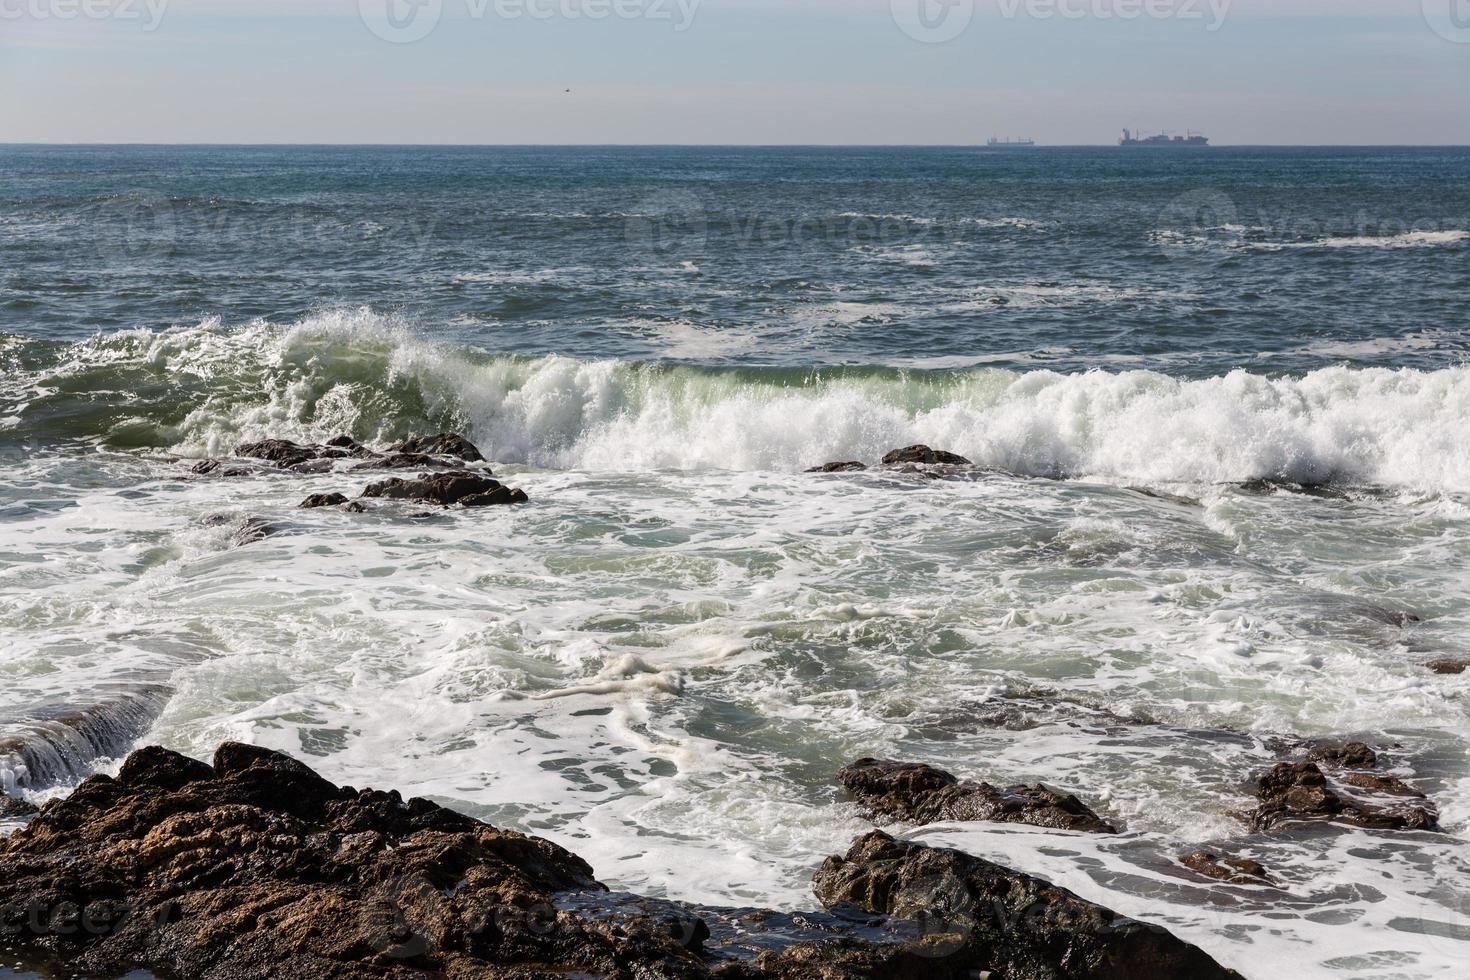 onde che si infrangono sulla costa portoghese foto